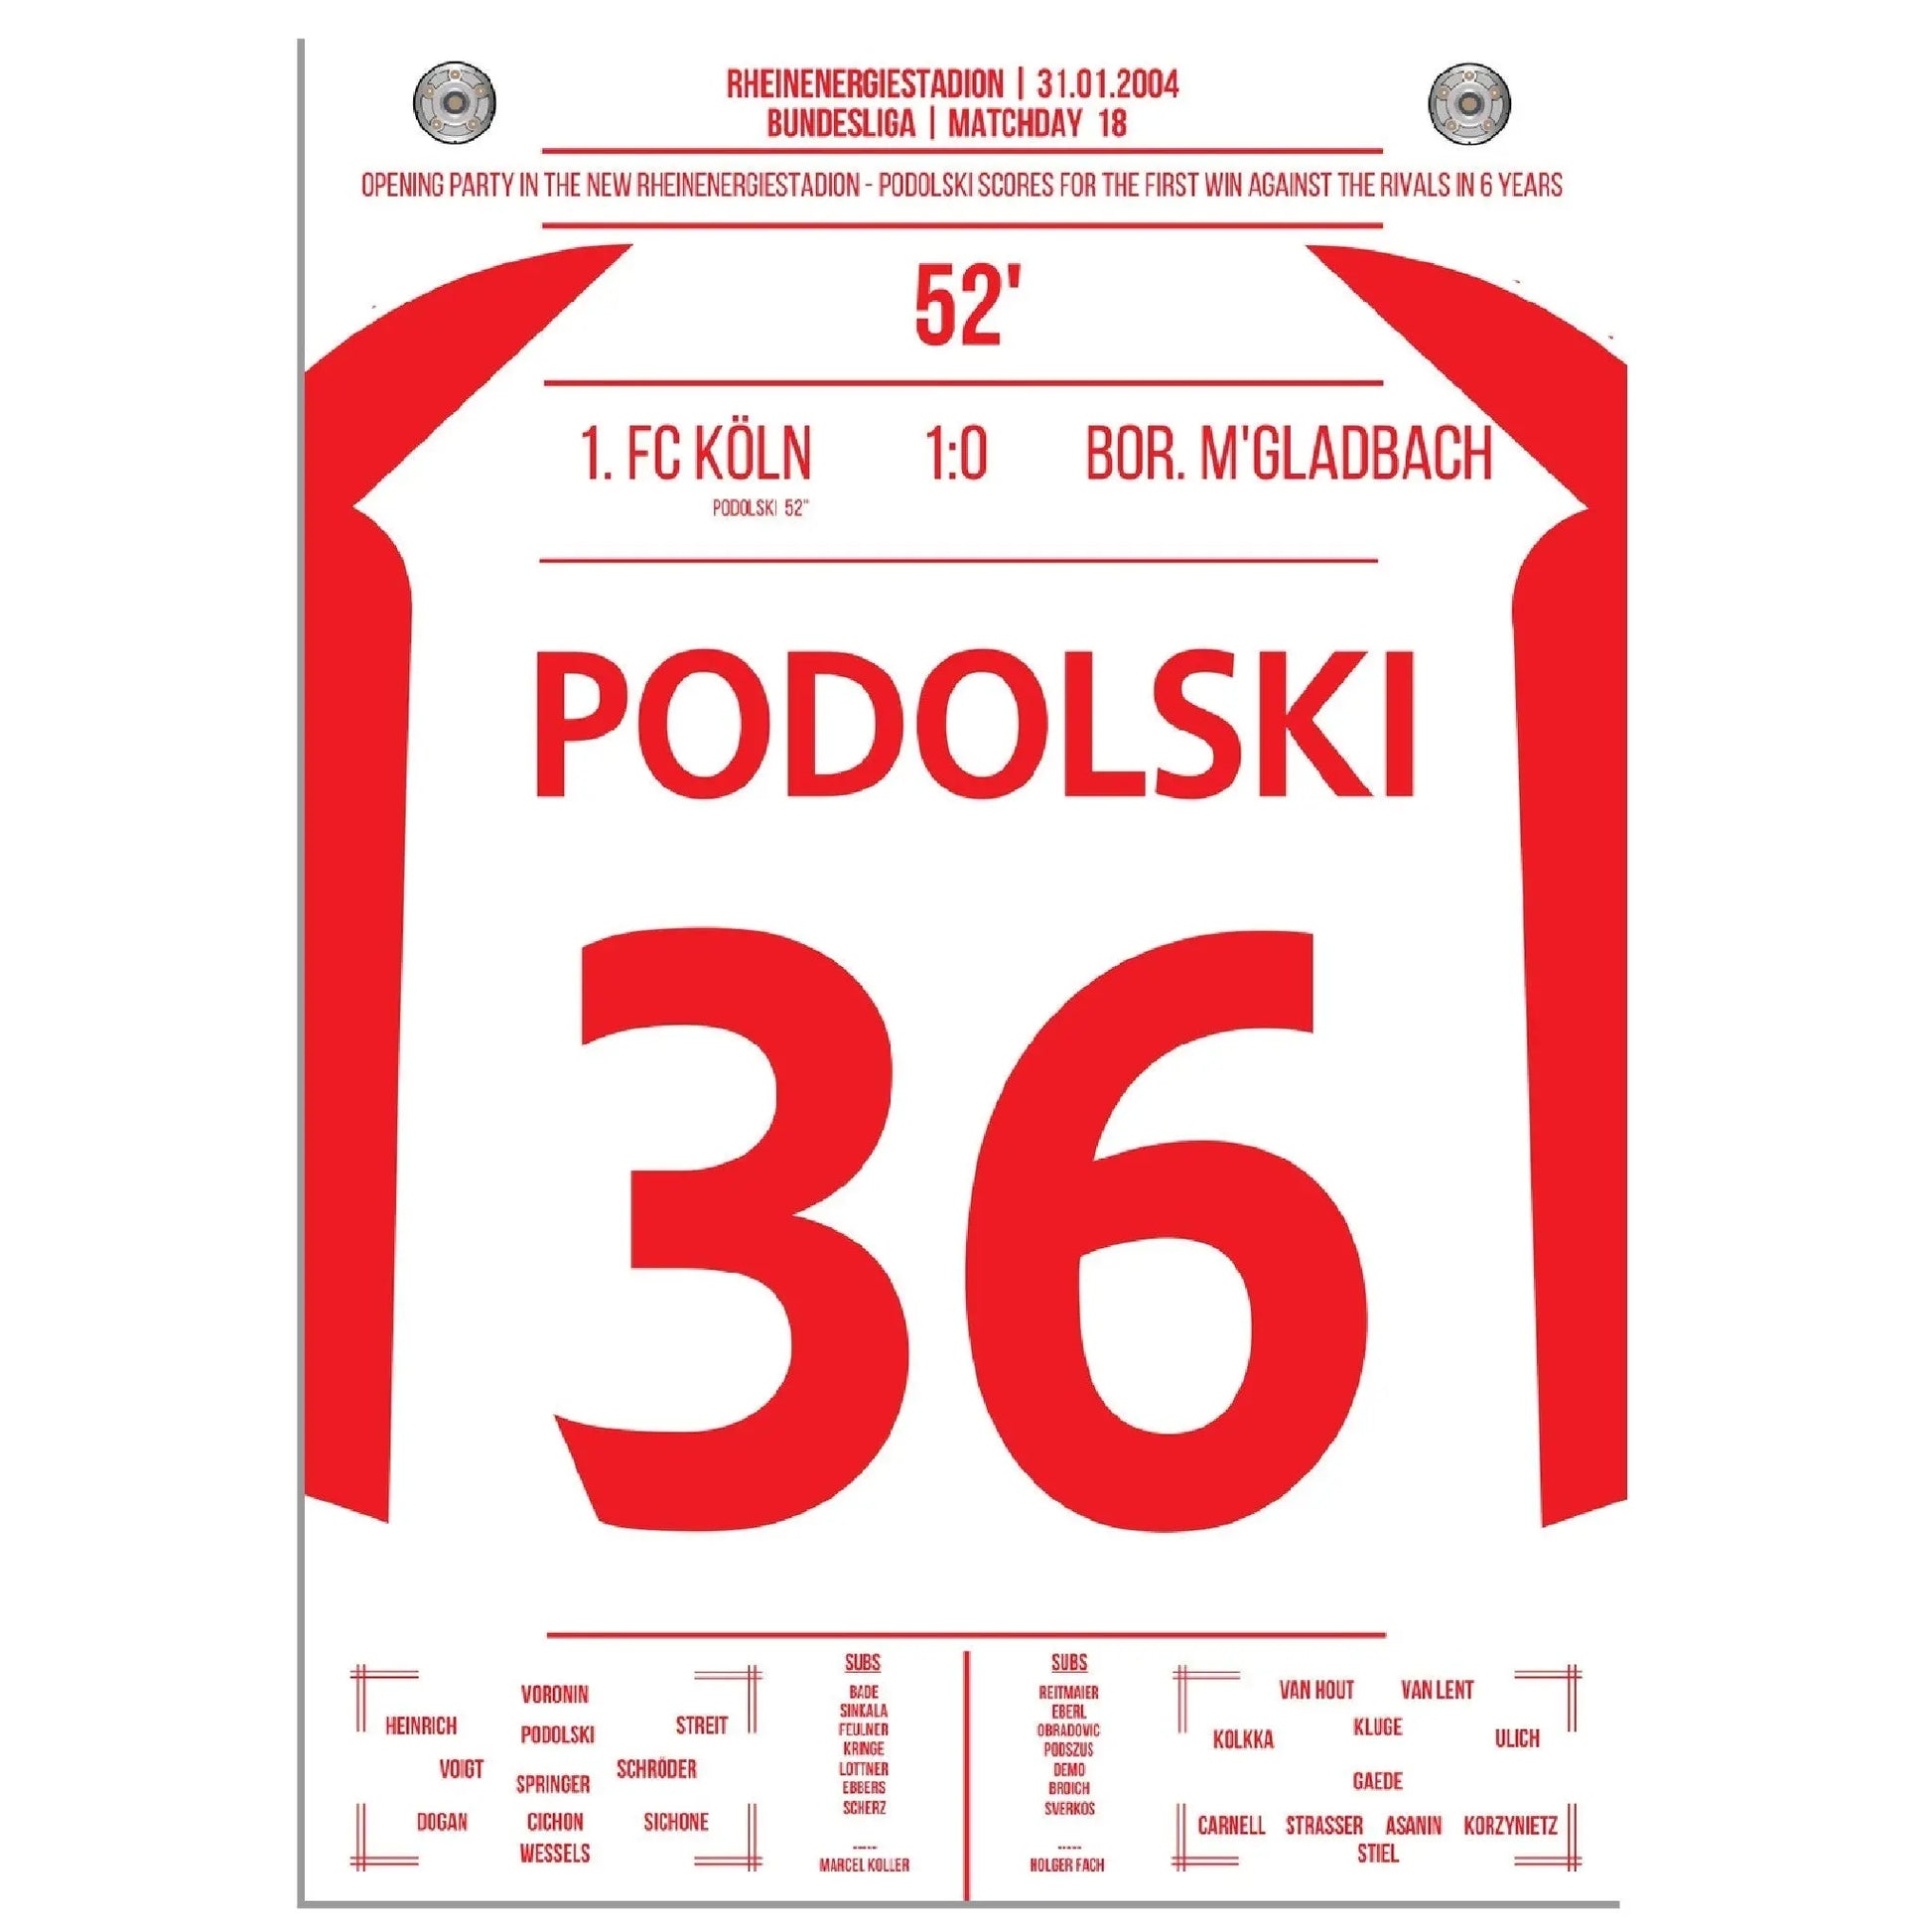 Podolski der Matchwinner im Derby bei Kölns ersten Sieg gegen Gladbach nach 6 Jahren 